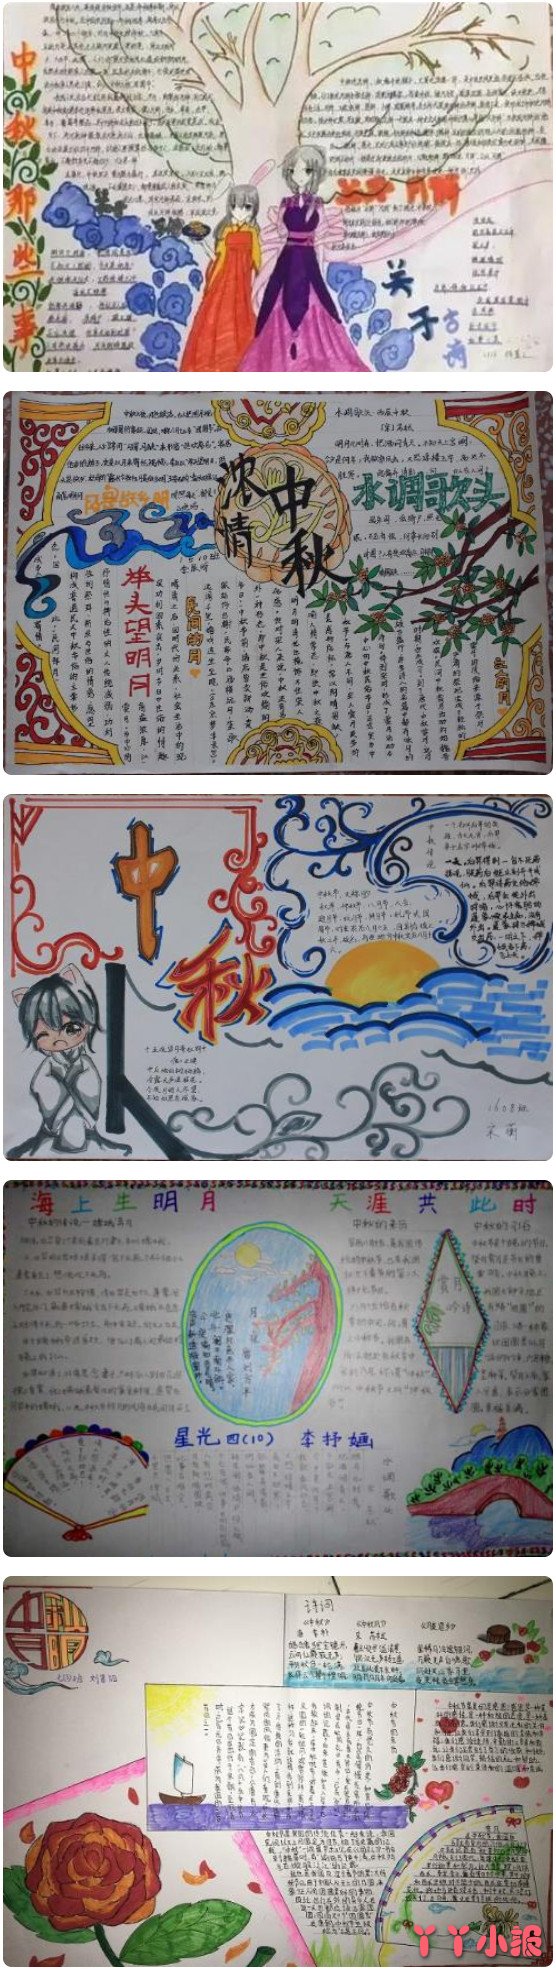 今天我们给大家带来了一张好看的中秋节的手抄报模板图,喜欢的小